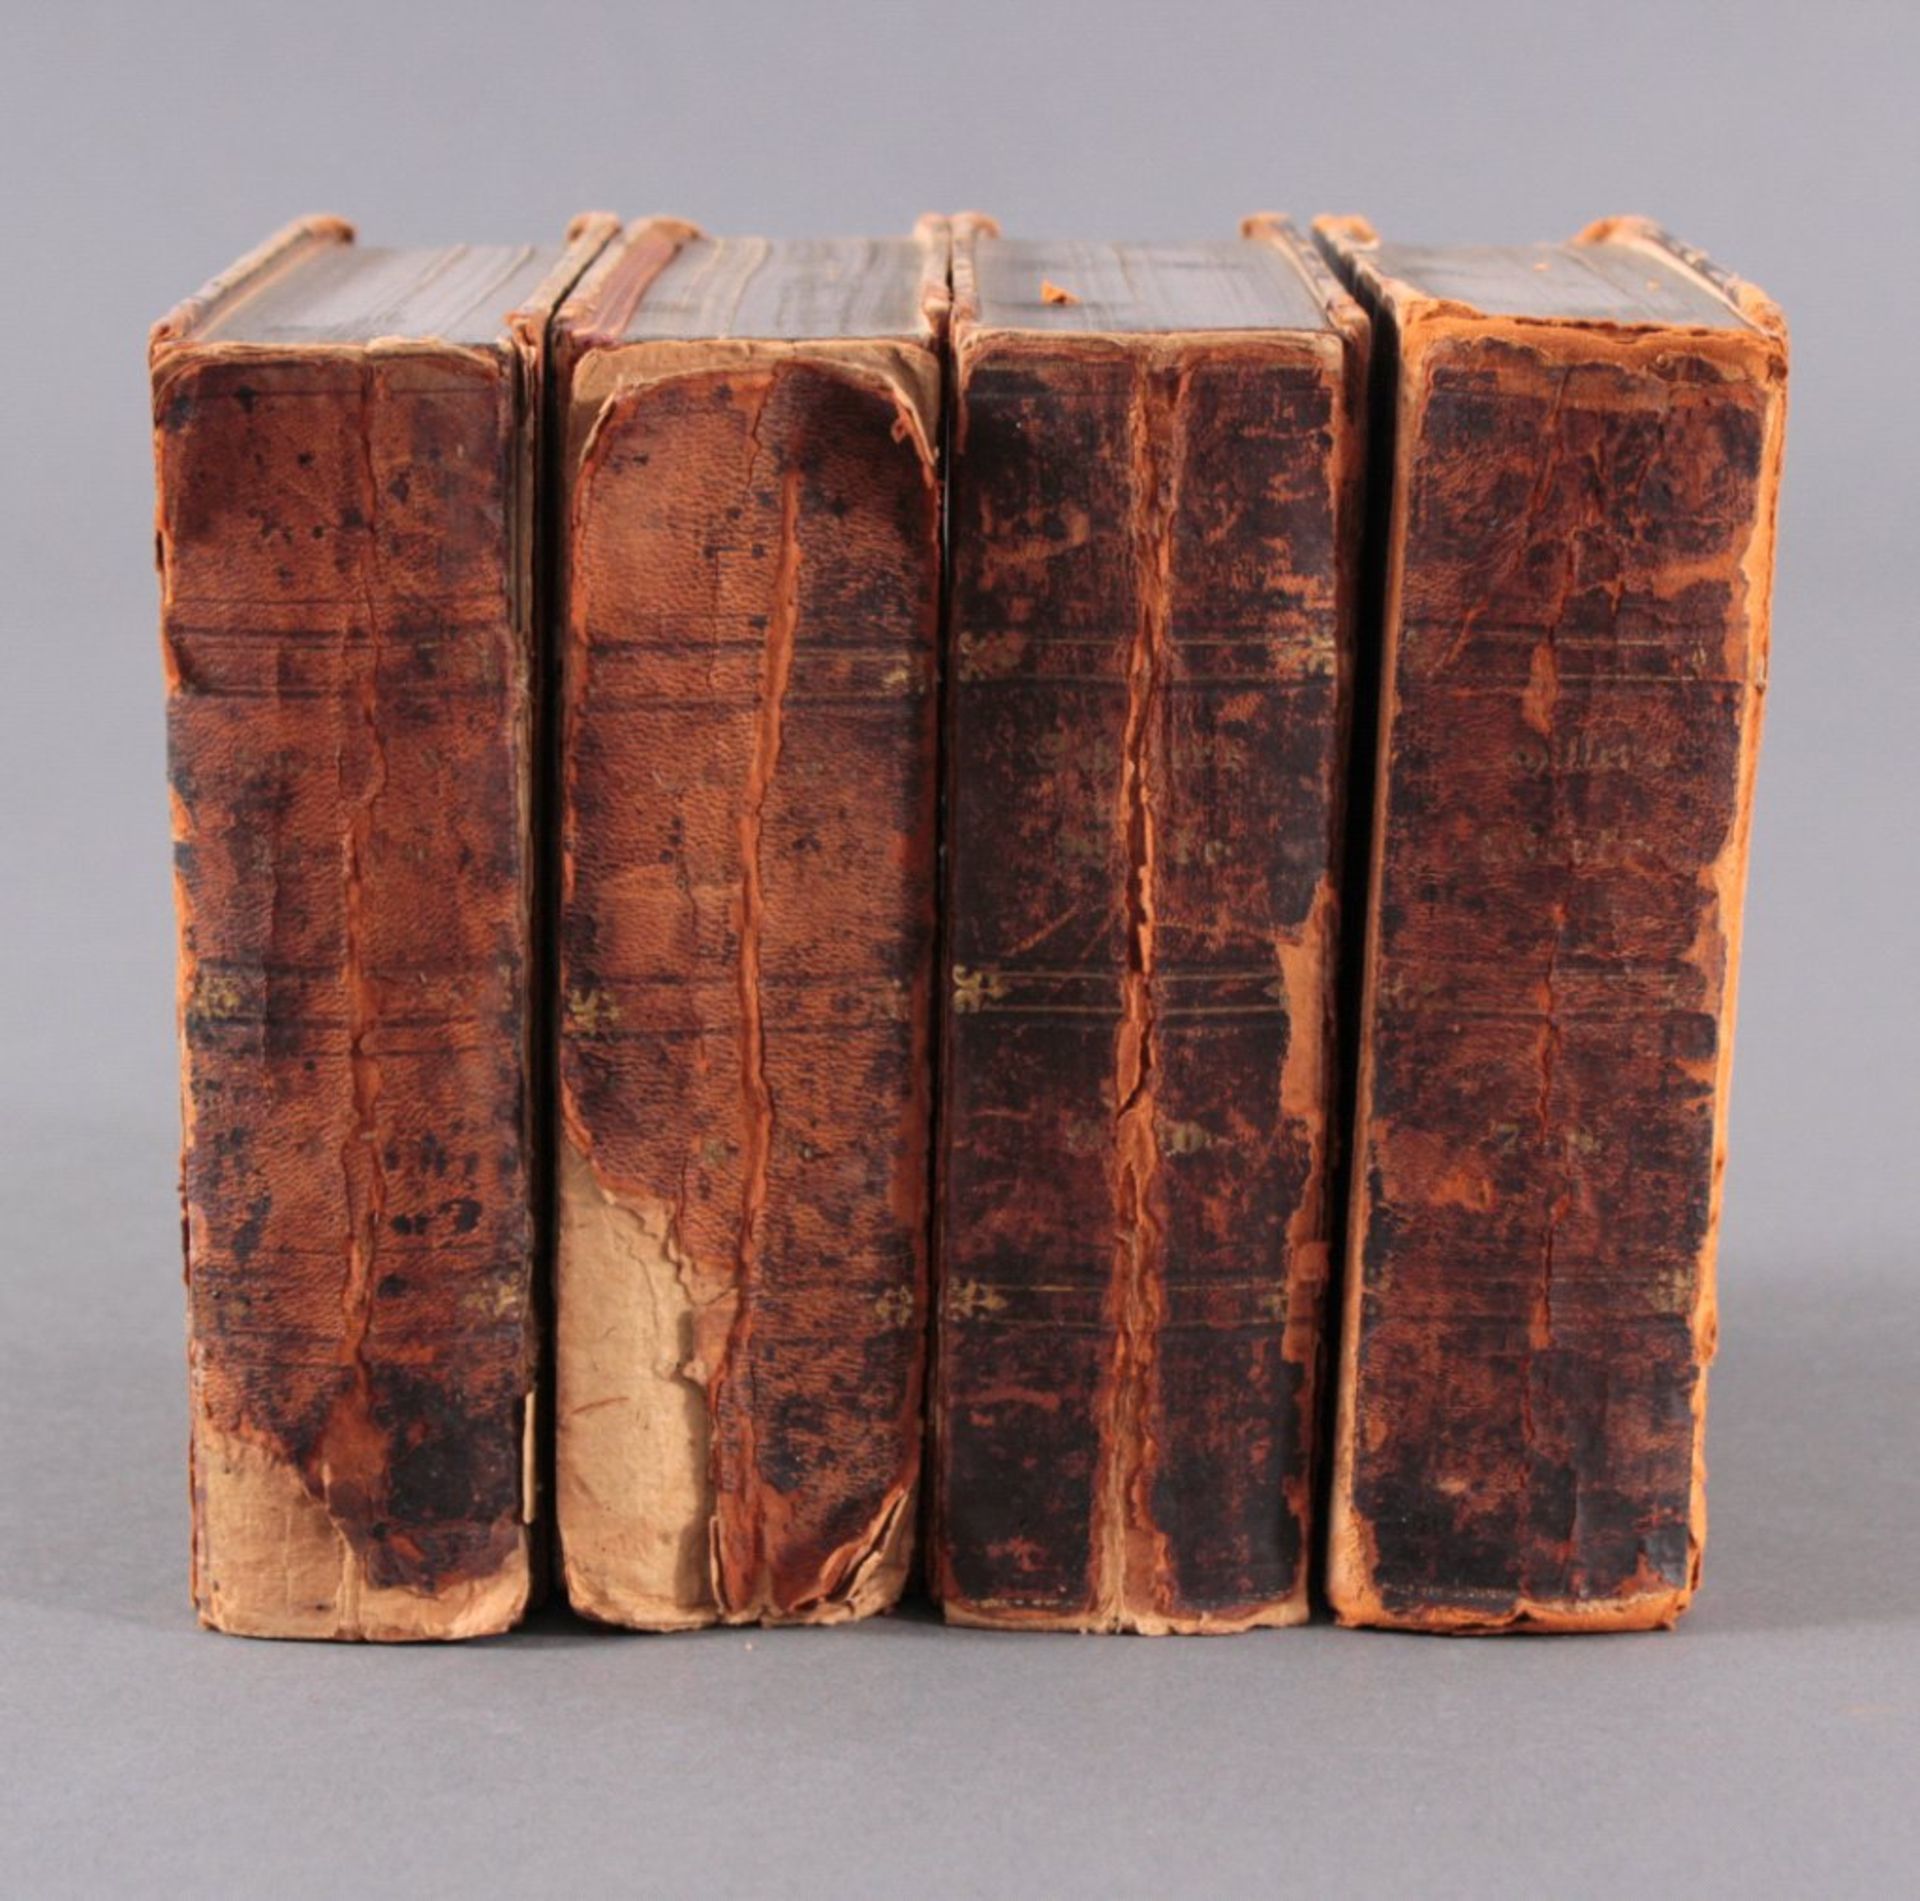 8 Bände aus Schillers sämmtliche Werke in zwölf Bänden, 18683-10, jeweils 2 Stück